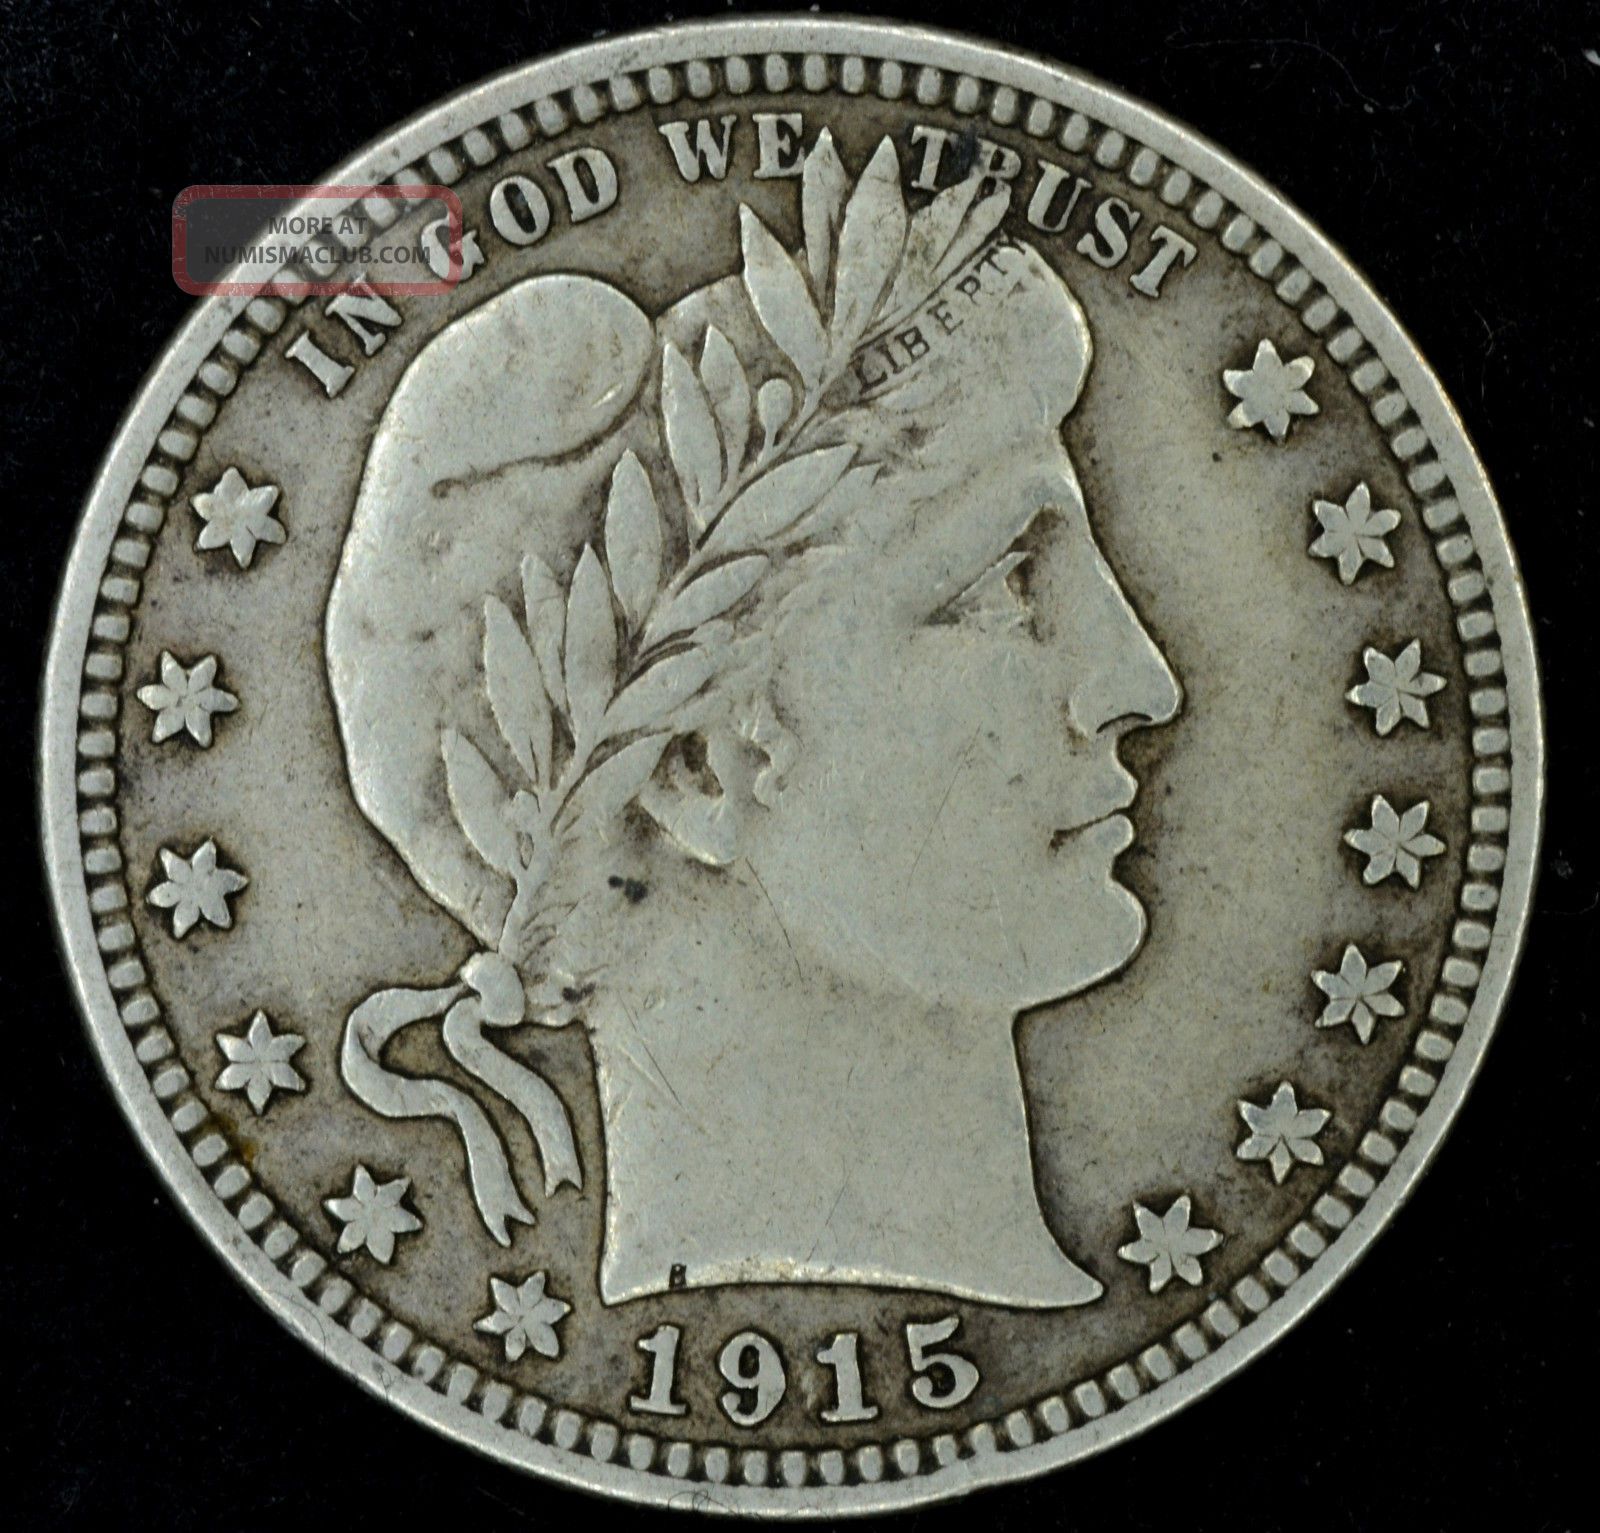 1915 quarter dollar coin